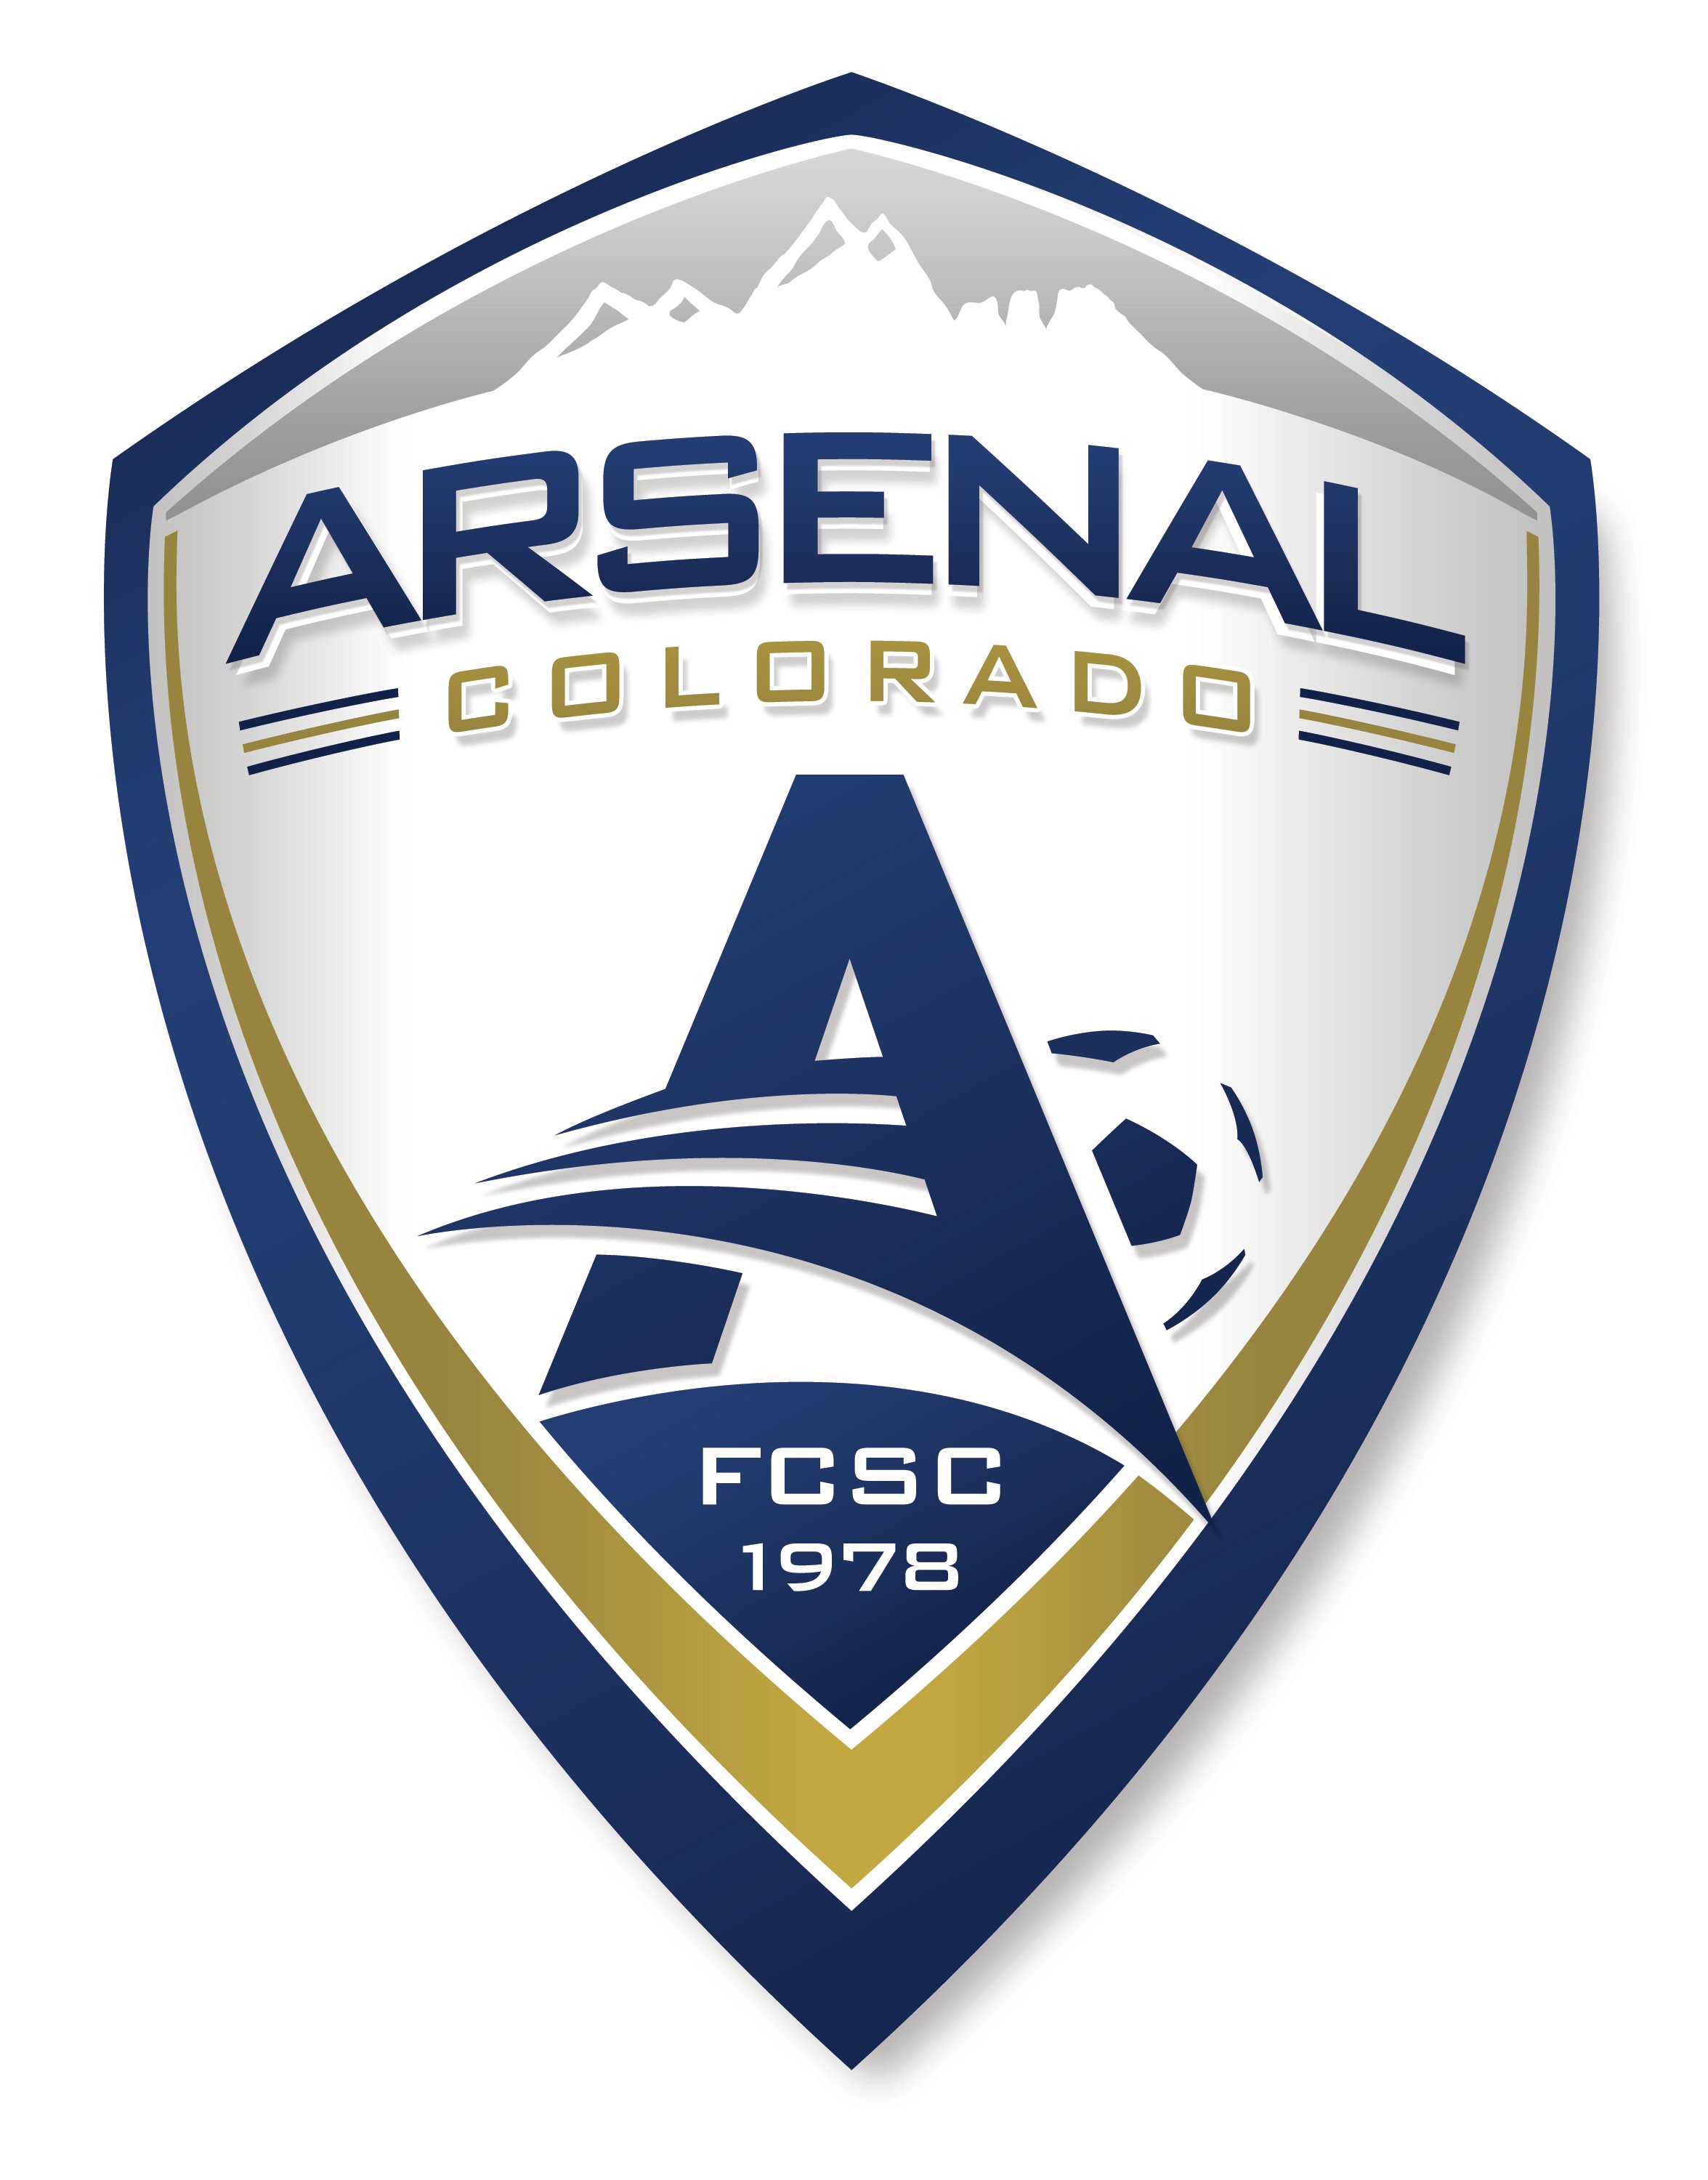 Arsenal Colorado